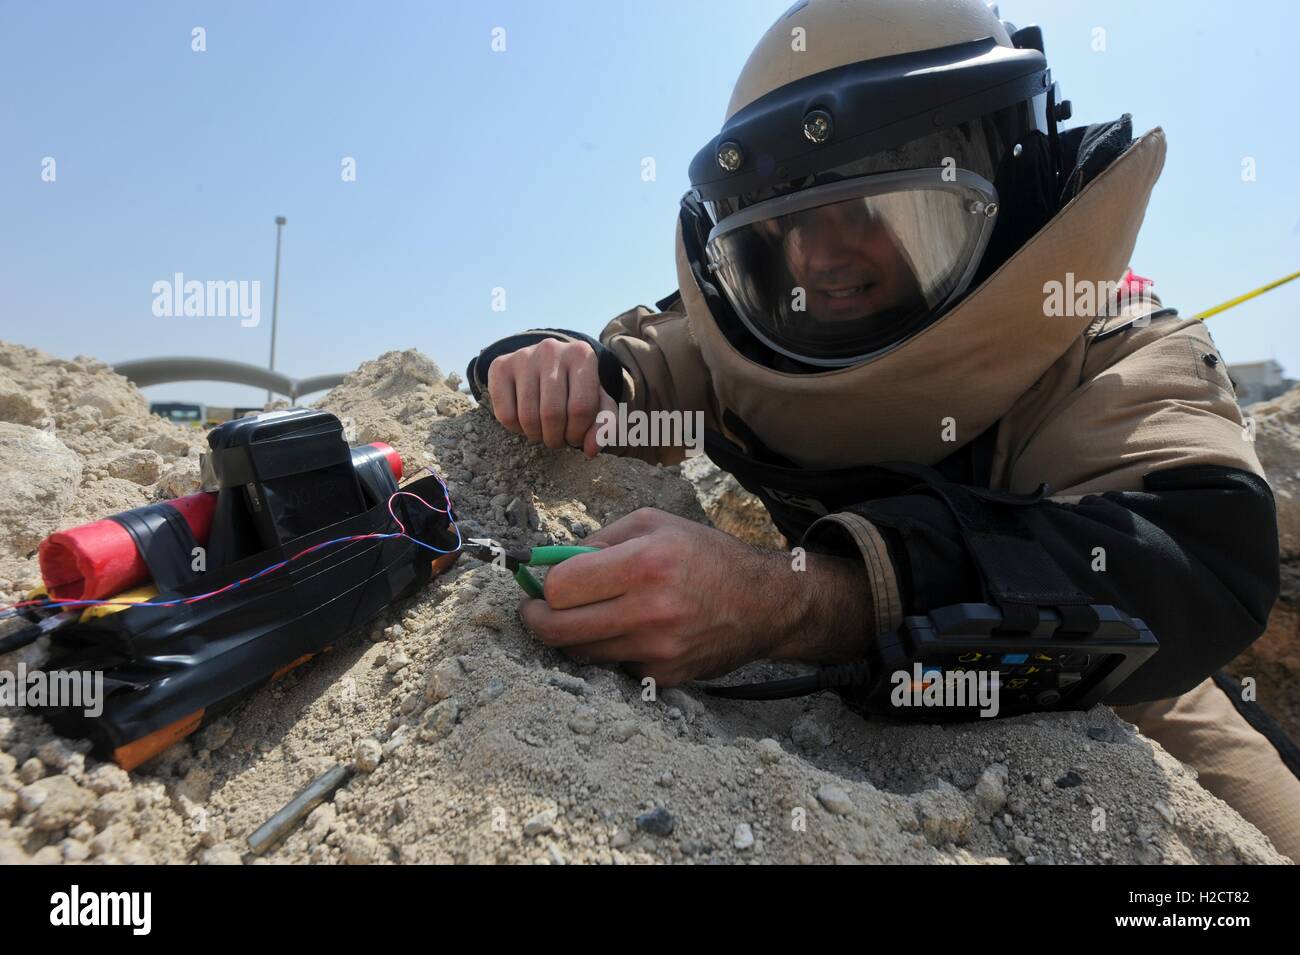 Un soldat de l'US Air Force et de neutralisation des explosifs improvisés technicien désactive une simulation d'explosif au cours d'une procédure de formation dans un endroit inconnu le 15 juillet 2013 dans le sud-ouest de l'Asie. Banque D'Images